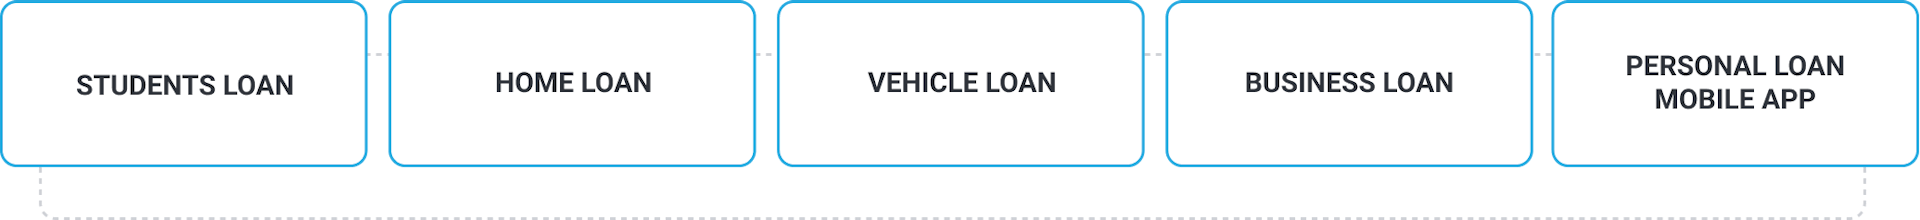 Loan Lending App Development_2